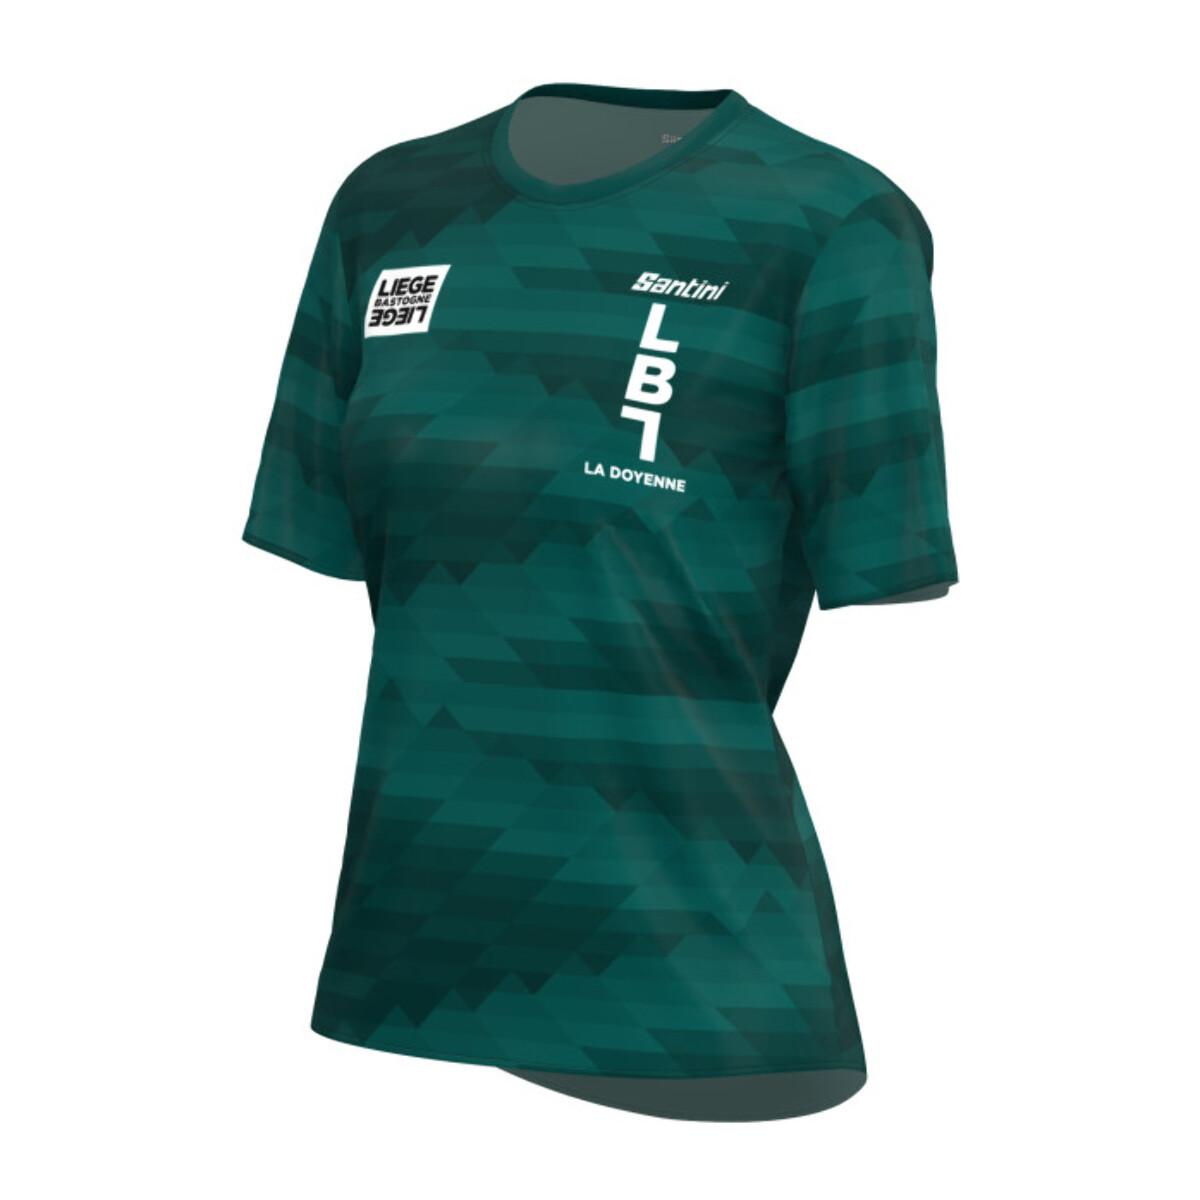 Liege Bastogne Liege - T-Shirt Technique Femme - Imprimé - Femme